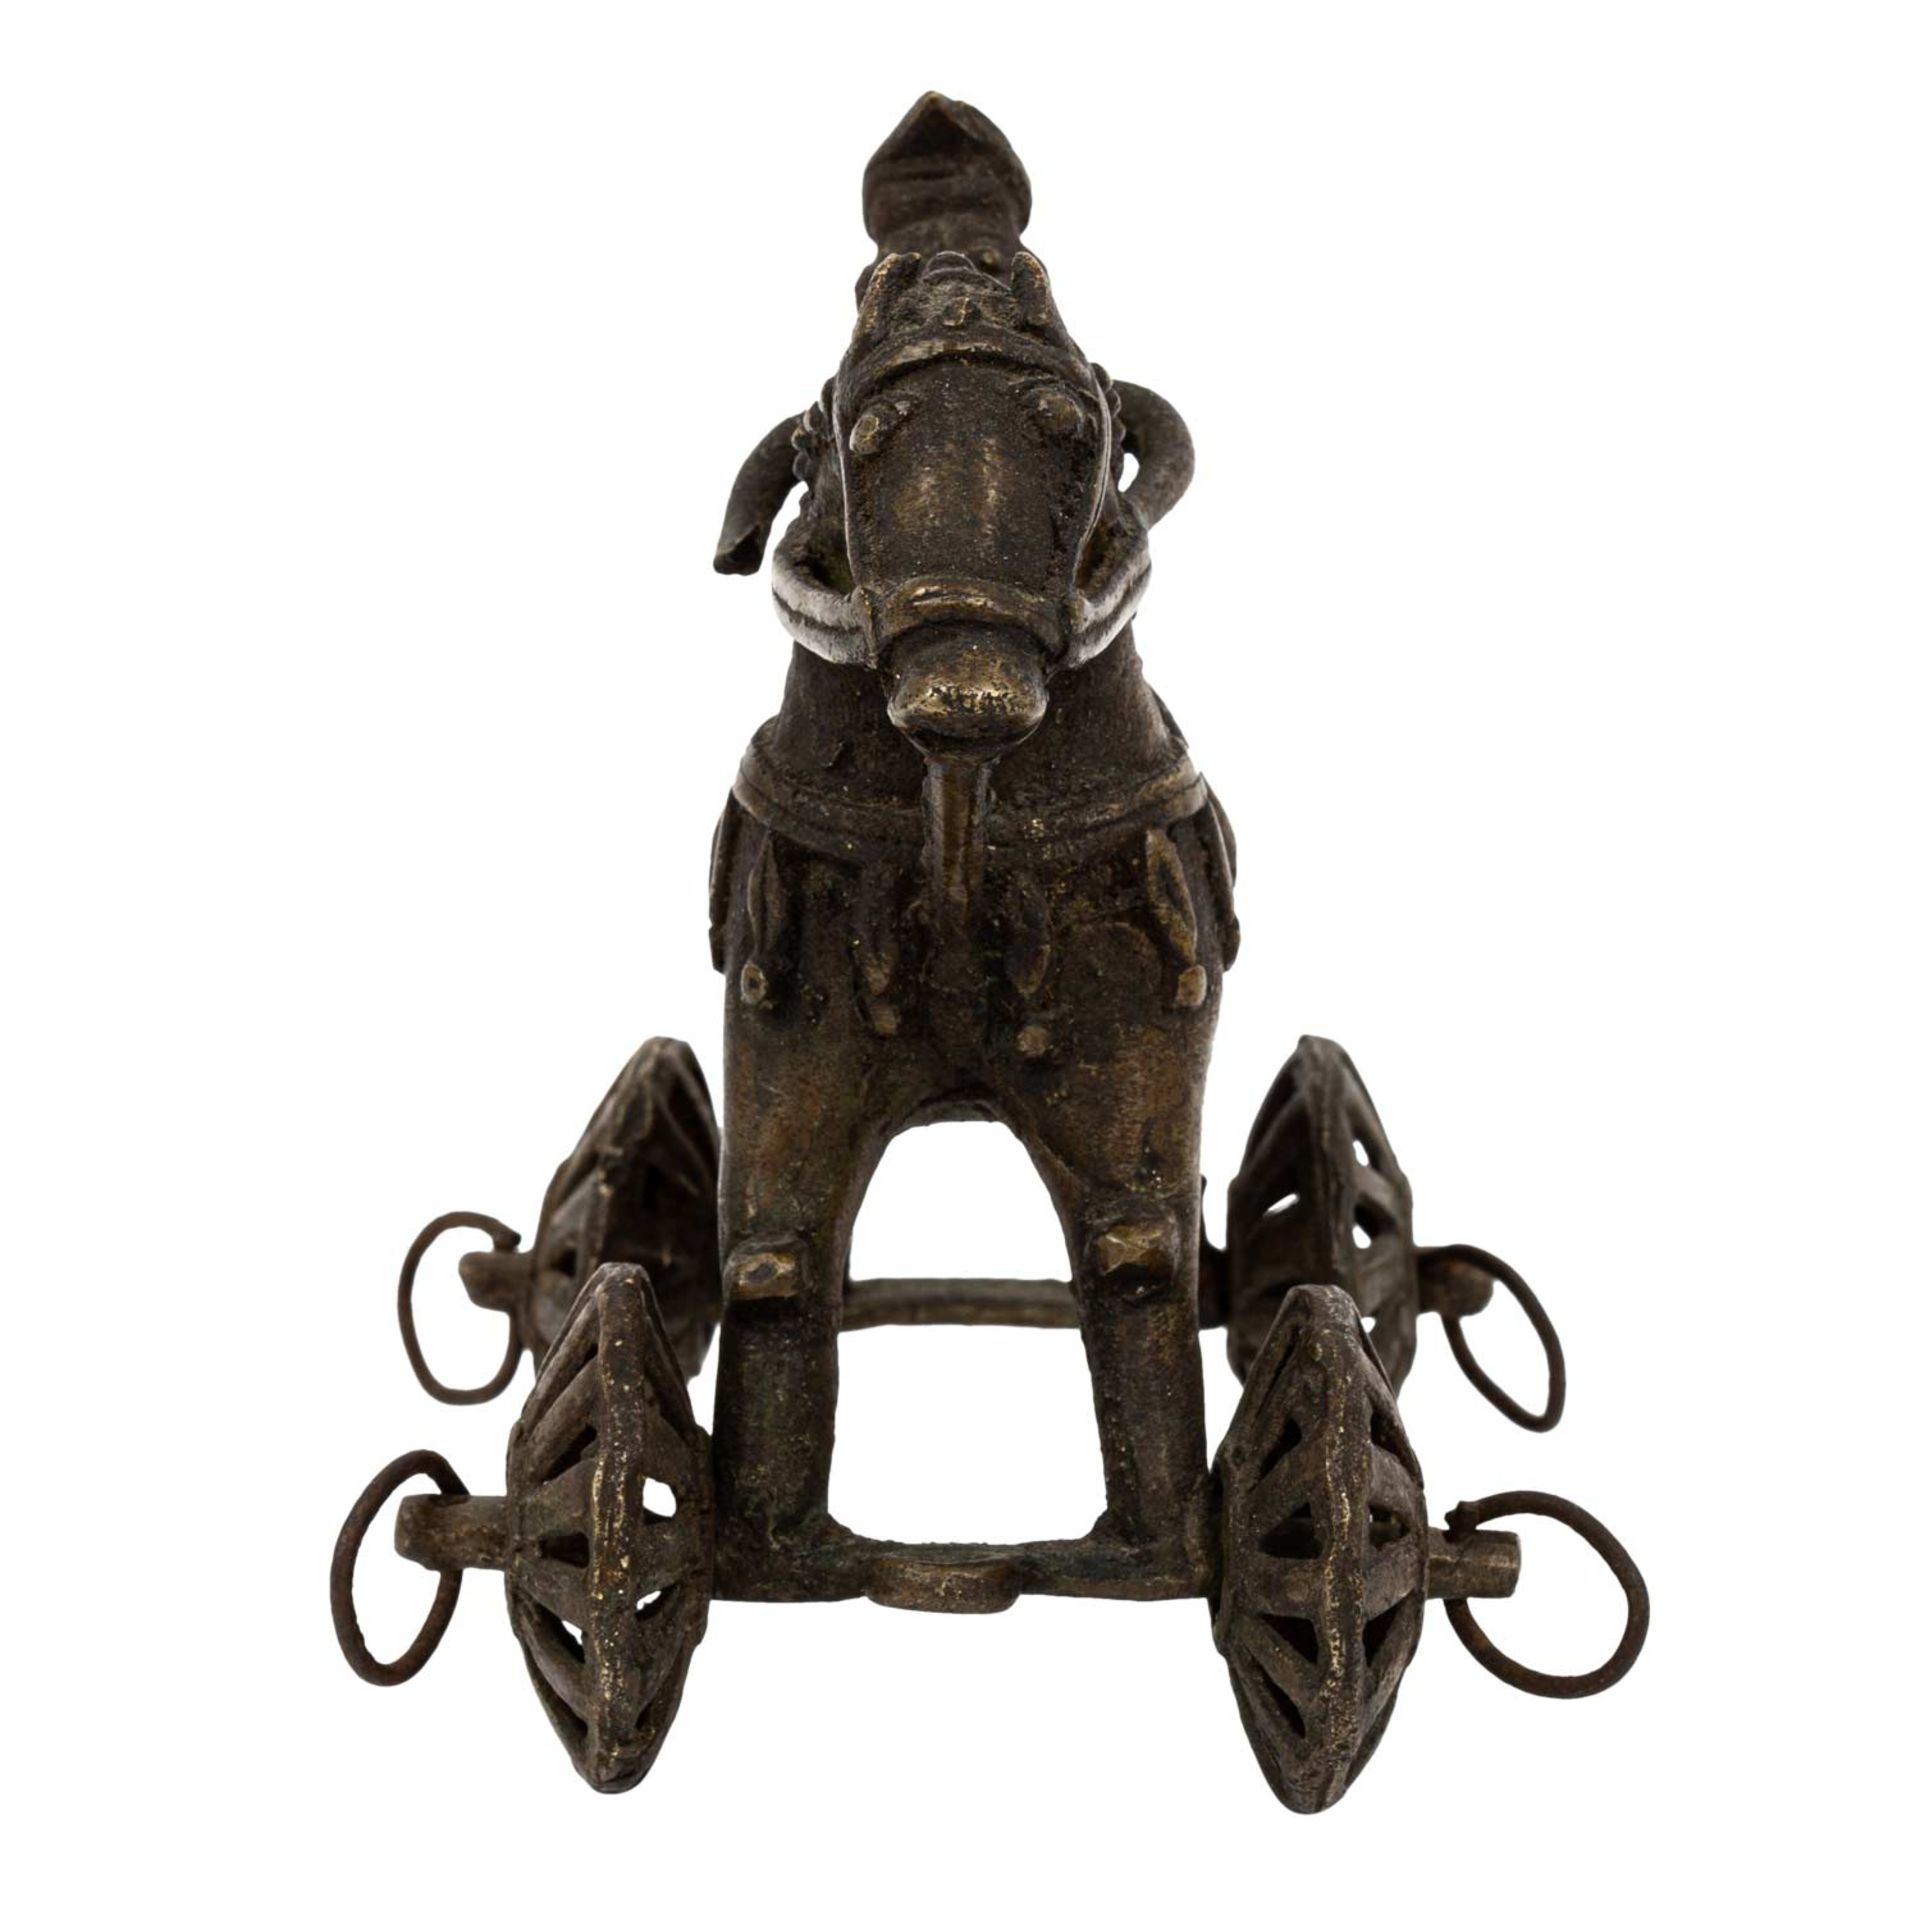 Altes Kinderspielzeug "Pferd" aus Messing-Bronze, INDIEN, 19. Jh..Pferd mit Reiter auf - Image 2 of 6